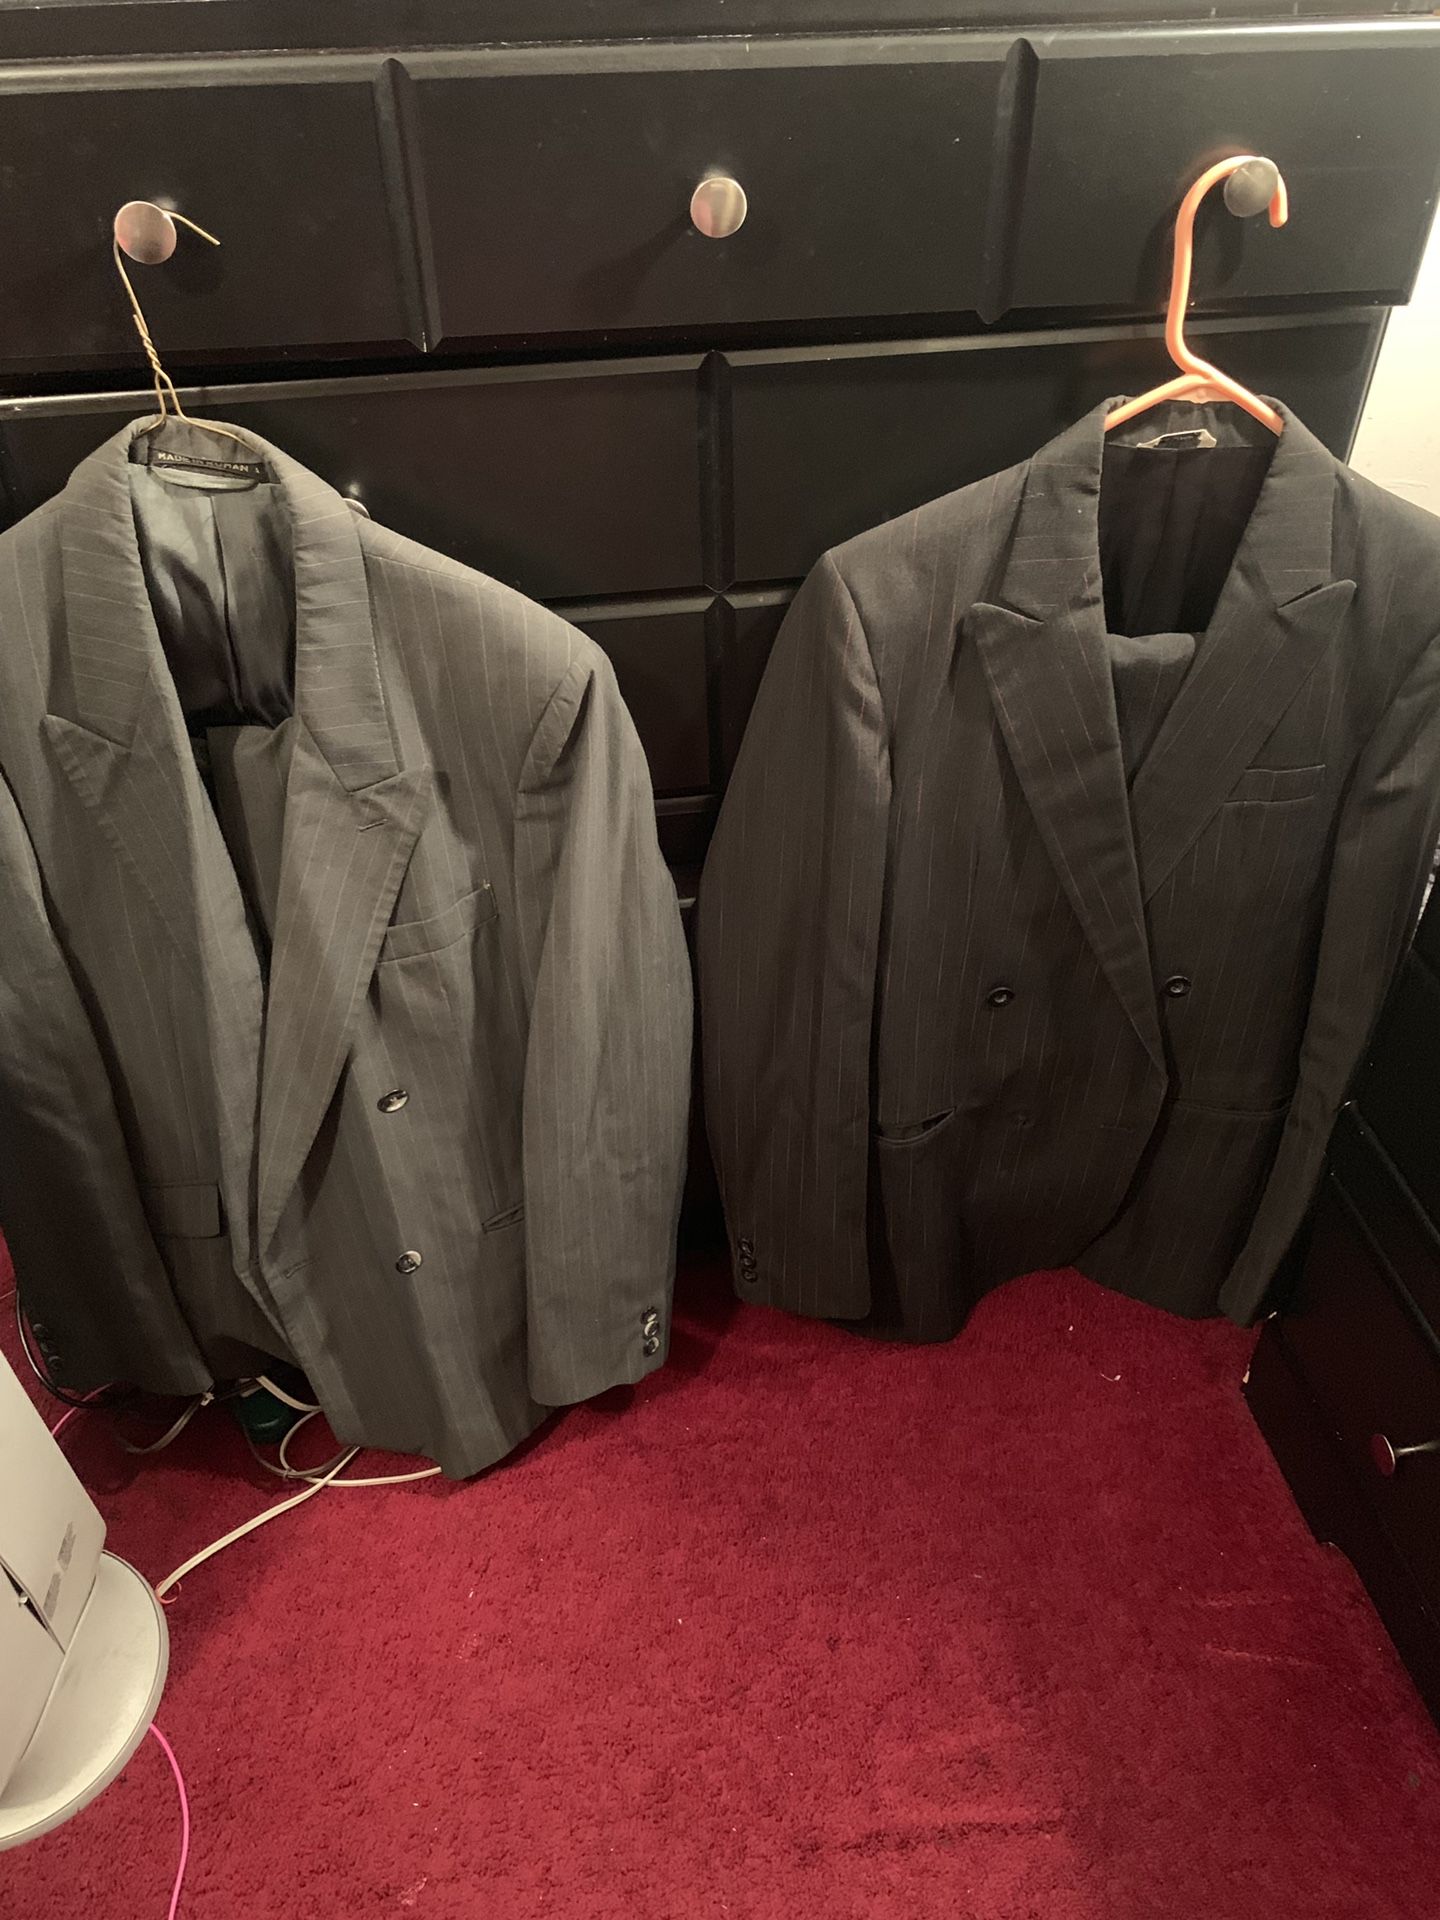 Men’s suits and raincoat